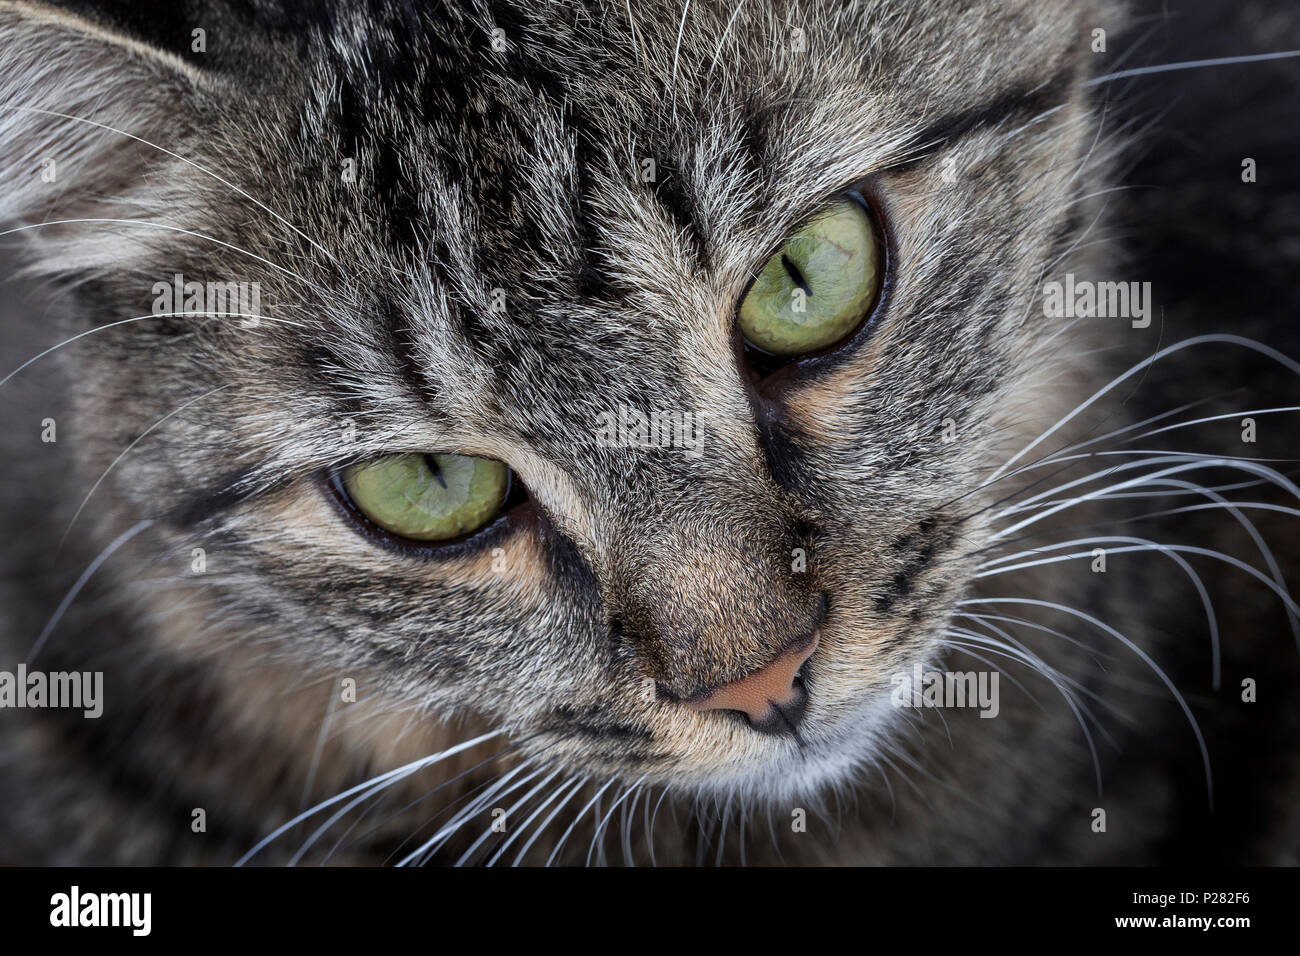 Close up portrait of cats face Banque D'Images